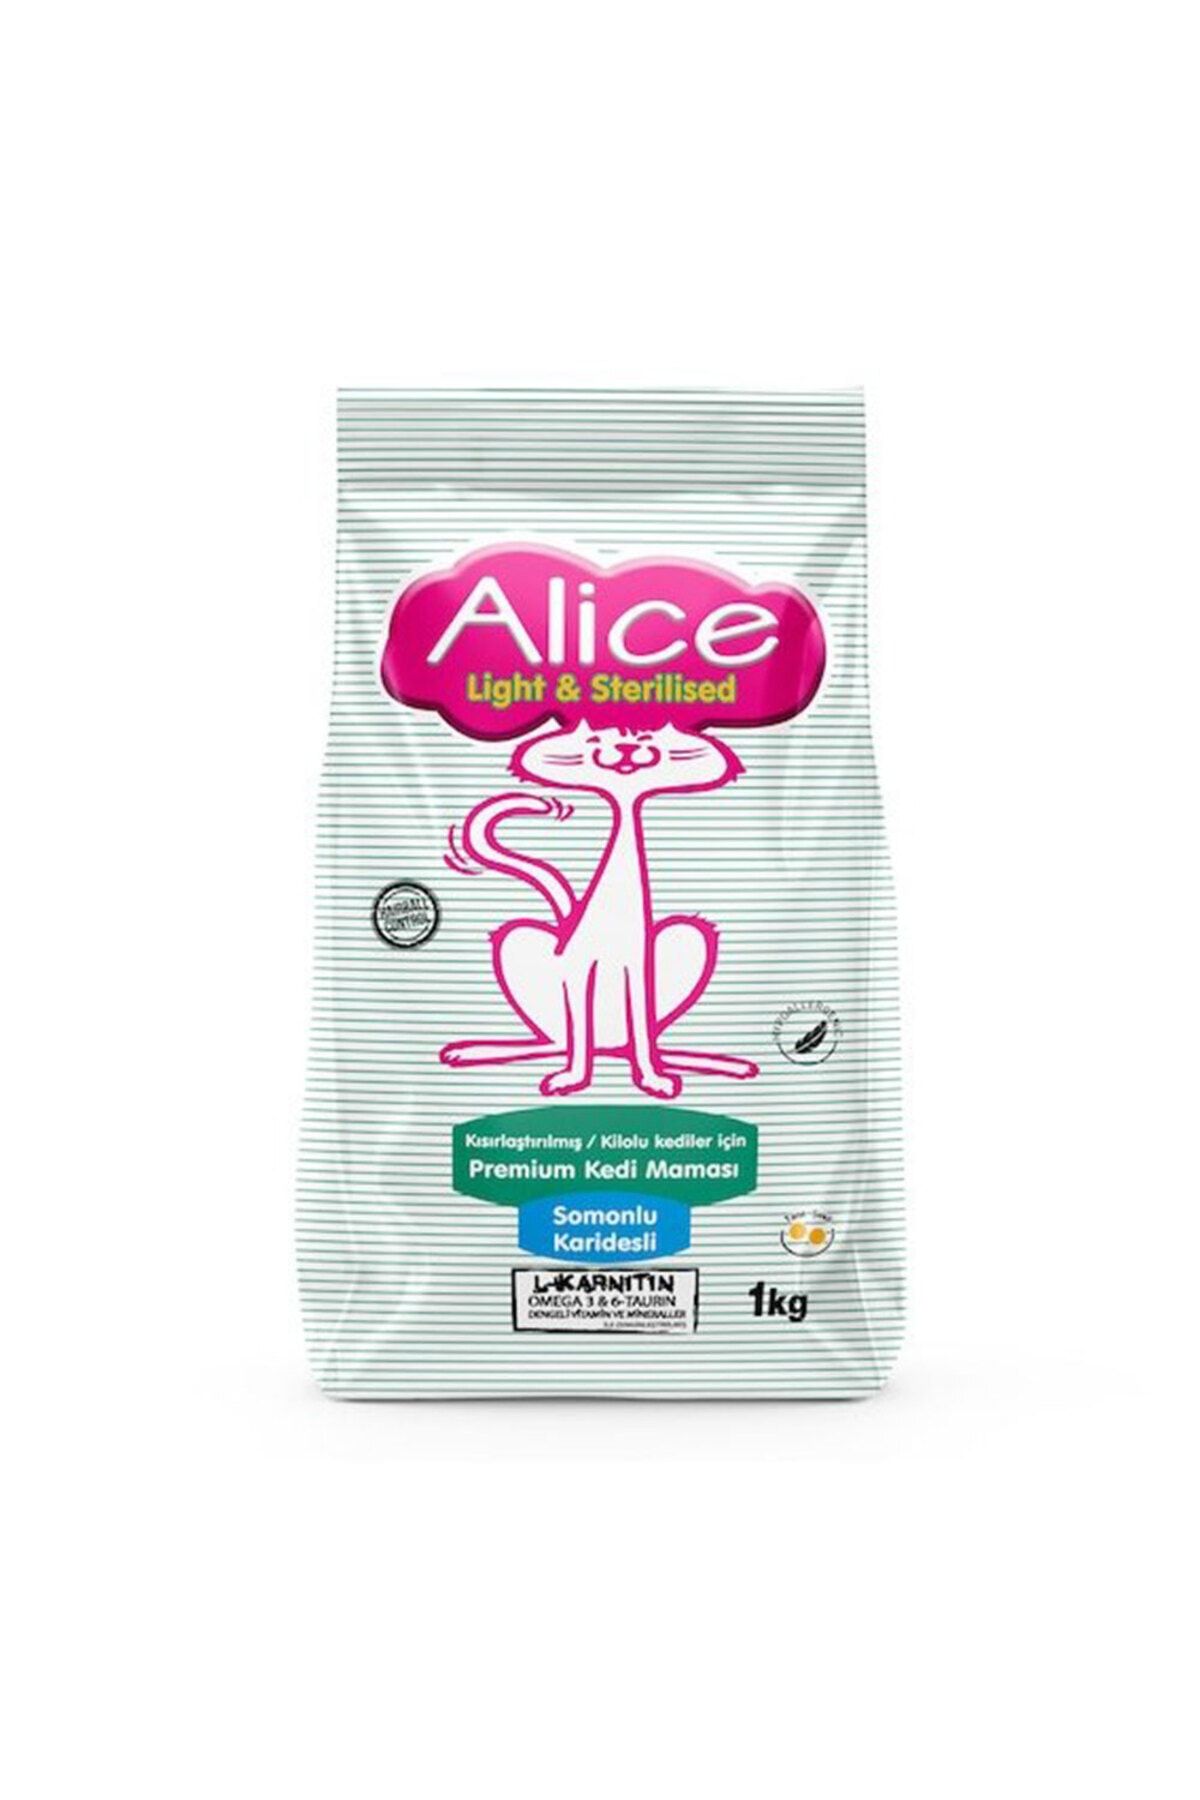 Alice Kısırlaştırılmış / Kilolu Kediler Için Super Premium Mama Somonlu Karidesli 1kg